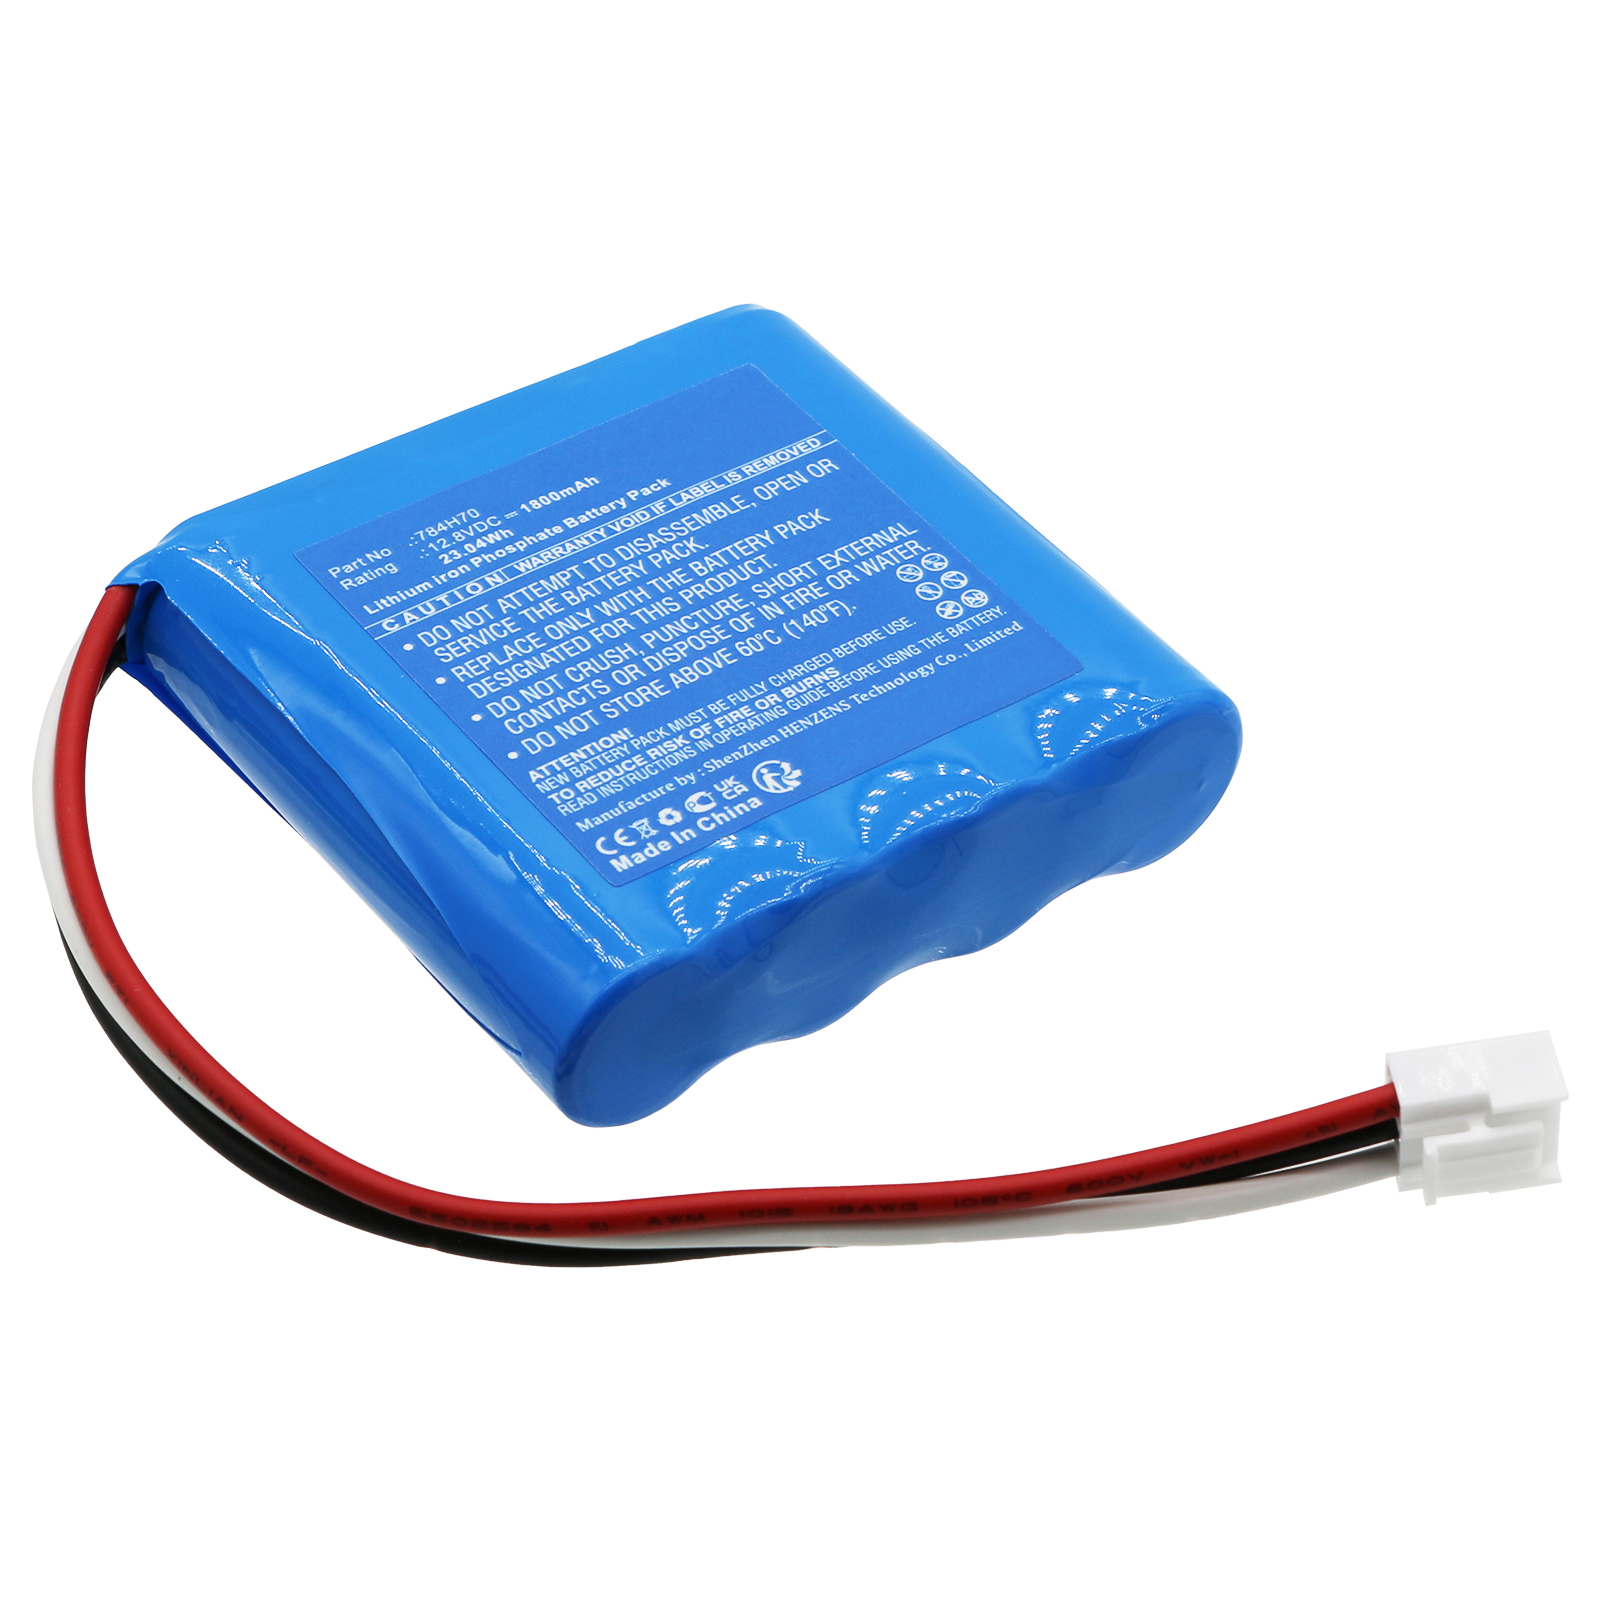 Synergy Digital Emergency Lighting Battery, Compatible with DUAL-LITE 784H70 Emergency Lighting Battery (LiFePO4, 12.8V, 1800mAh)